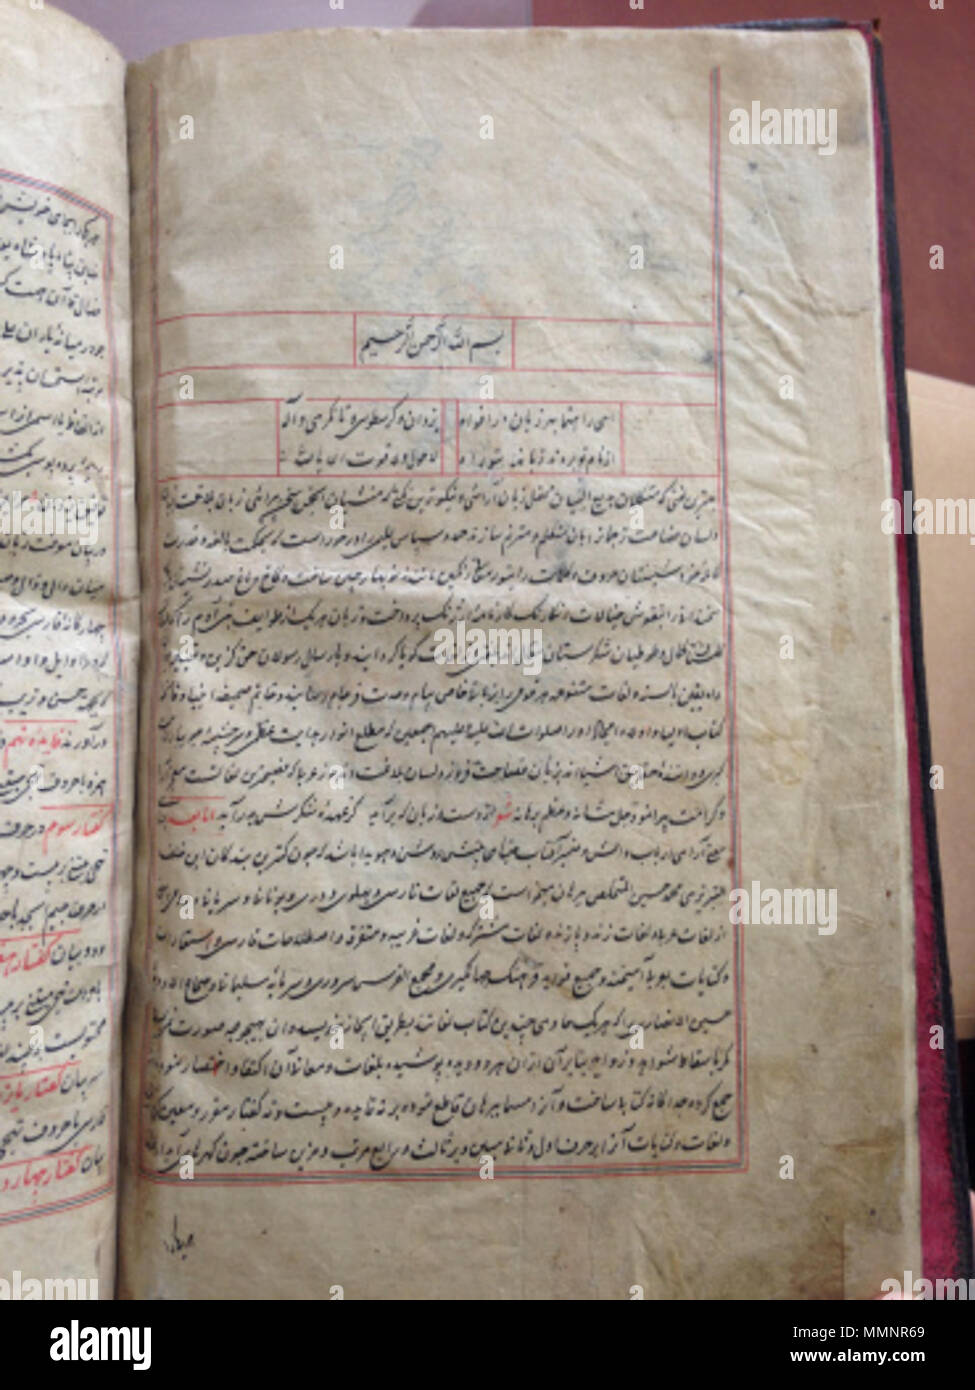 . Englisch: Burhan - ich Qati, ein Wörterbuch der persischen Sprache, einschließlich der Worte aus dem Arabisch und anderen Sprachen, übersetzt von Muhammad Husain ibn Khalaf Tabrizi Burhan ausgeliehen. Es war mit Sultan 'Abd Ullah Kutubshah, die in Golconda von A.H. 1035 bis 1083 regierte, war in A.H. 1062 (N.CHR. abgeschlossen 1651-1652). Die Arbeit wurde von Thomas Roebuck, Kalkutta, 1818 bearbeitet, und wurde in seiner Gesamtheit von J.A.Vullers in seinem Lexikon Persico-Latinum integriert. National Library of Wales-MS5449C العربية: نسخة مخطوطة من البرهان القاطع - قاموس فارسي من تصنيف الشاعر برهان التبريزي ، مخطوطات مك Stockfoto